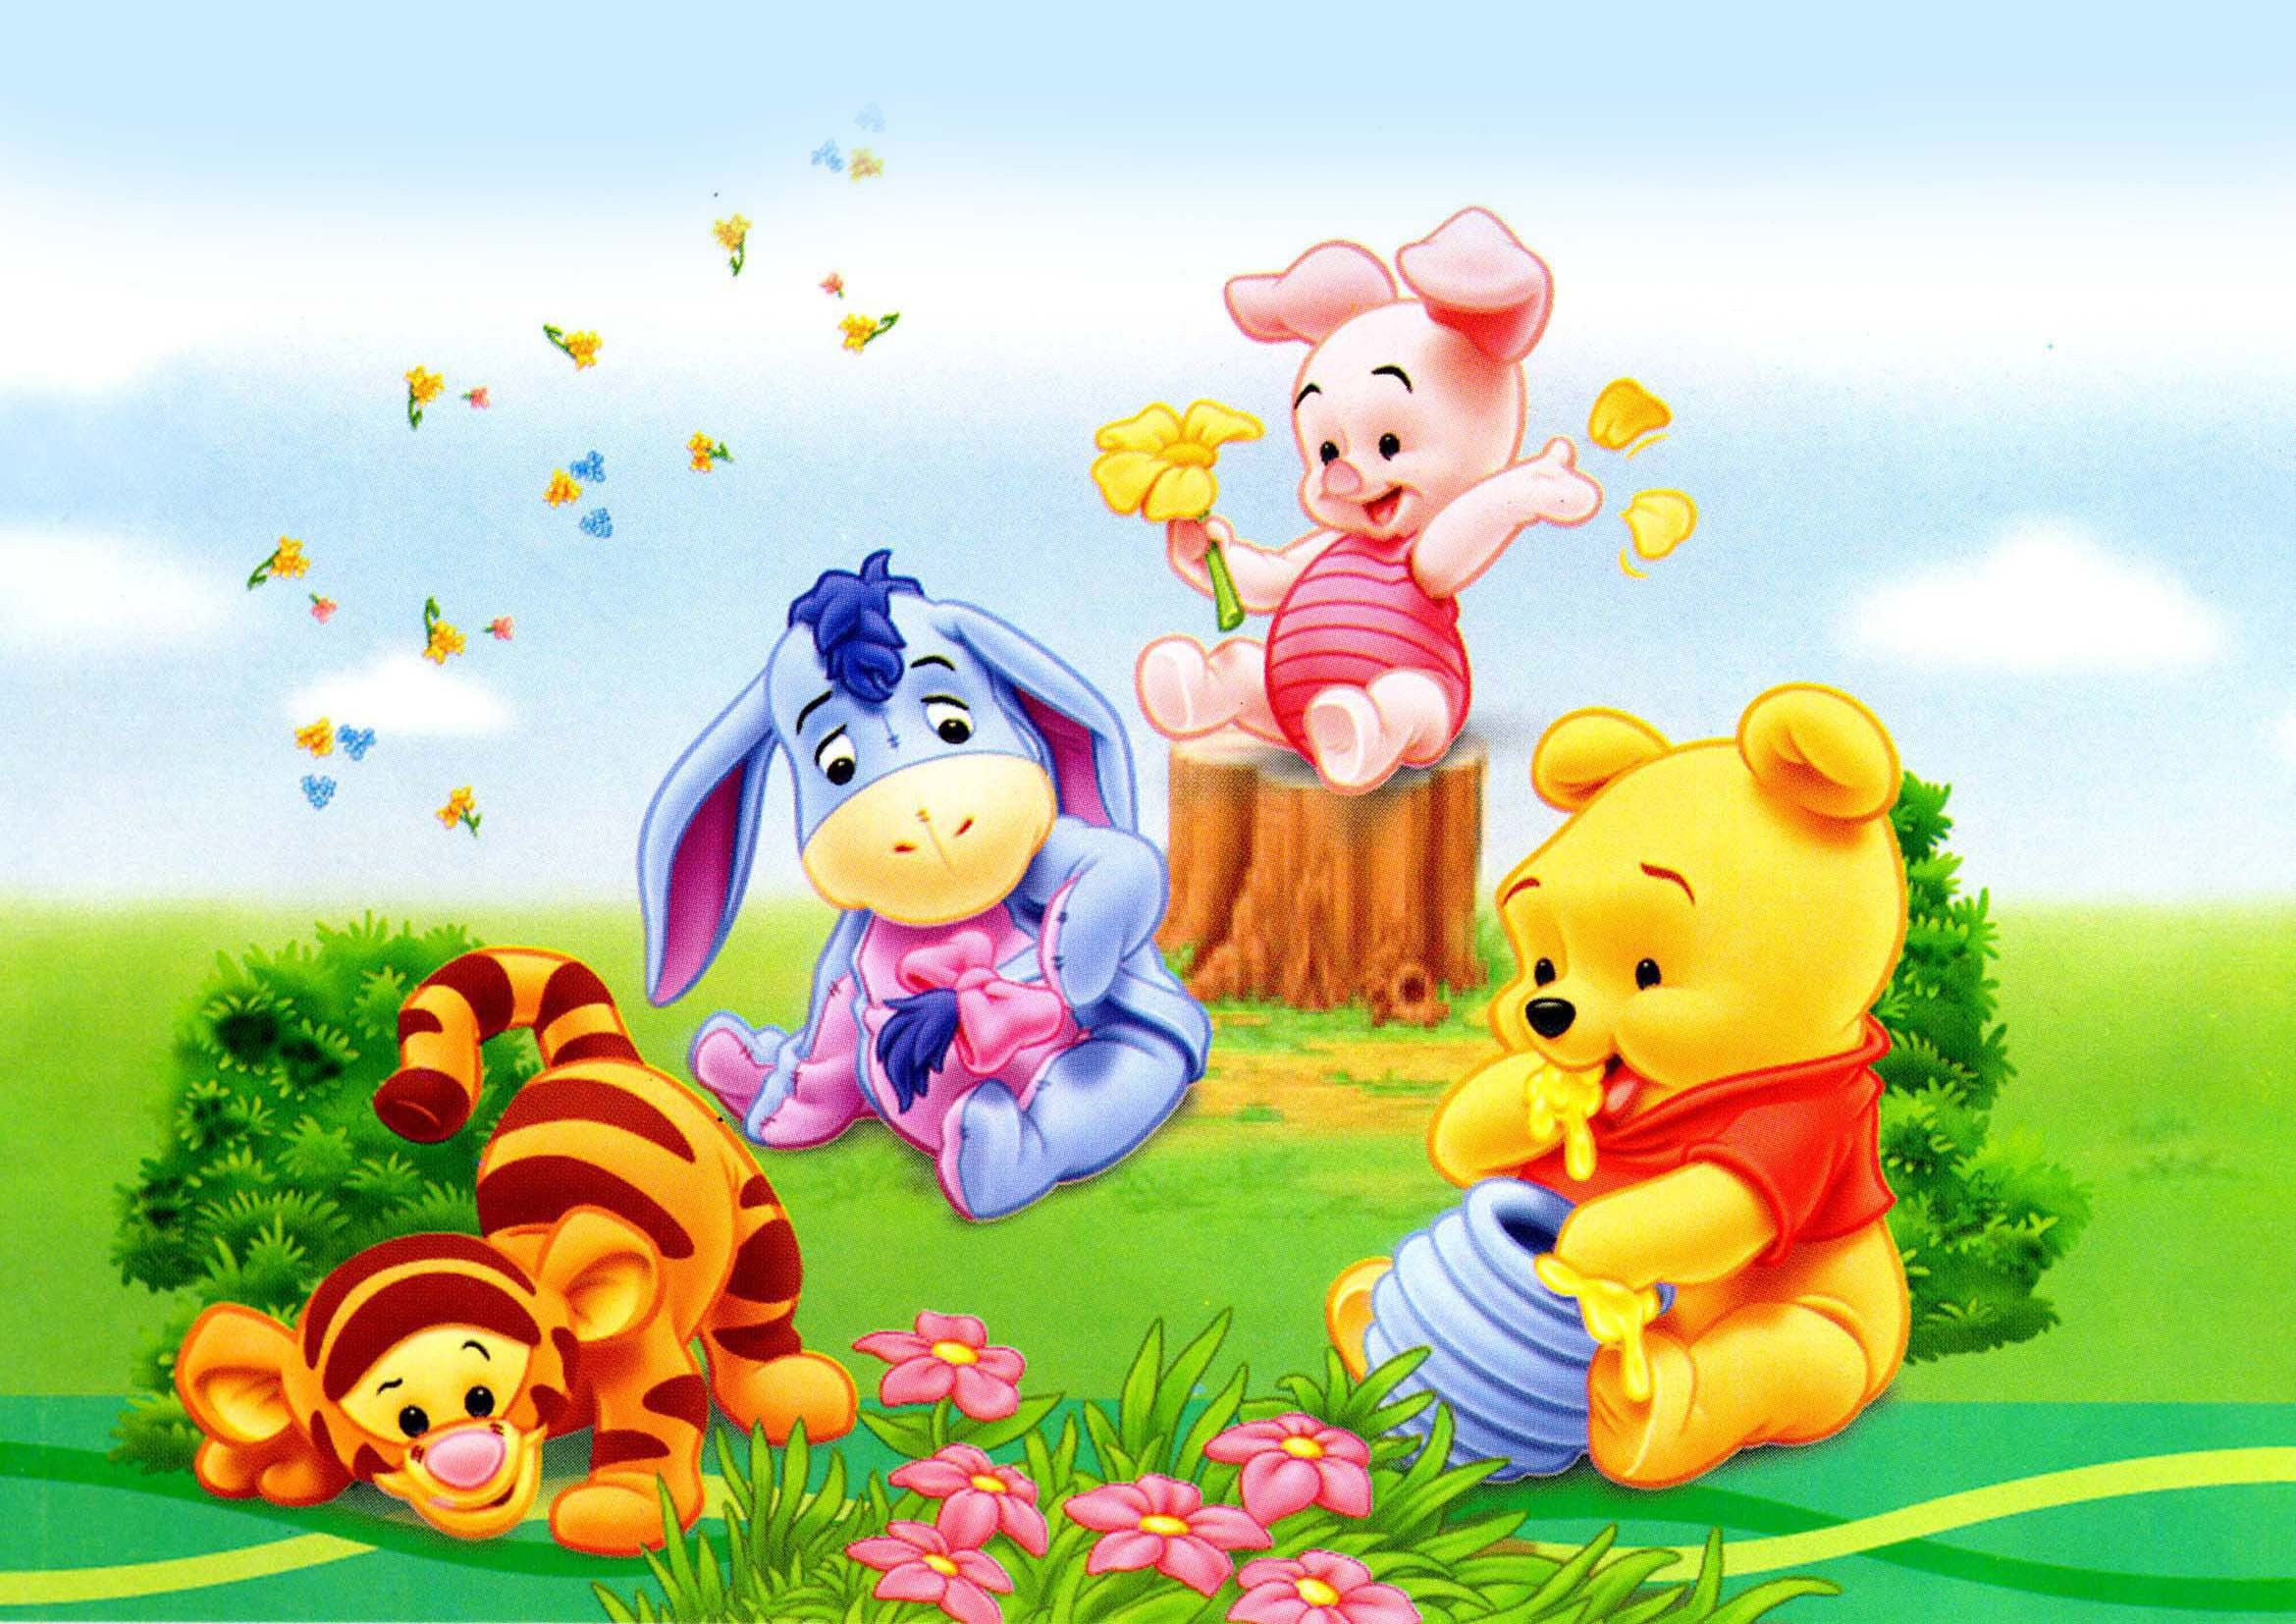 Wallpapers Hd Winnie The Pooh Baby | Cute Winnie The Pooh mit Pictures Of Winnie The Pooh And Friends